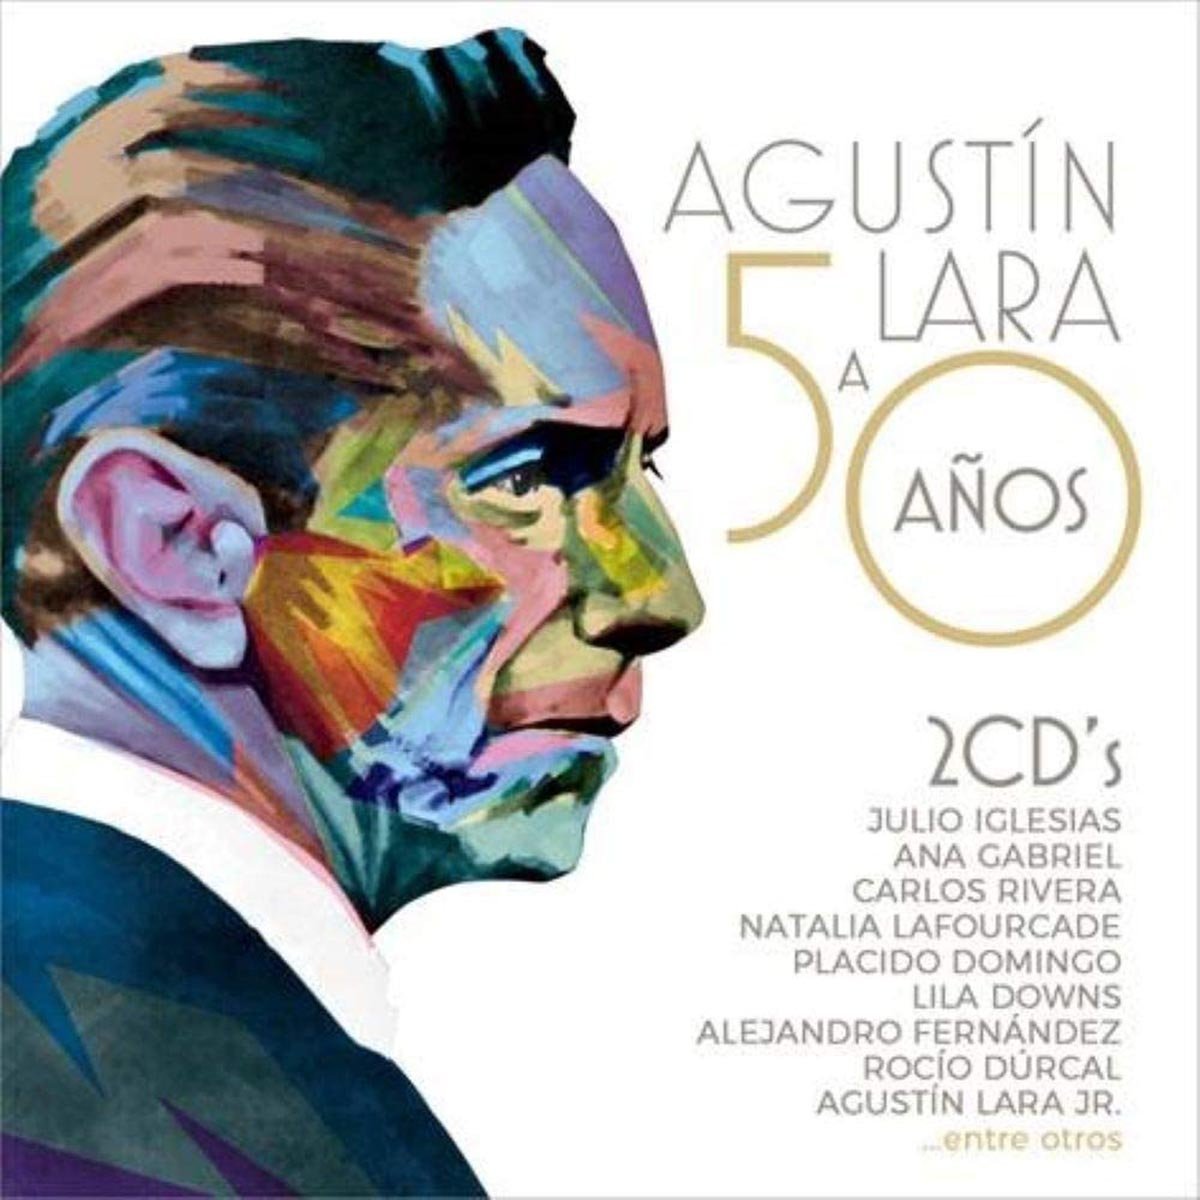 2 Cd's Agustin Lara a 50 Años